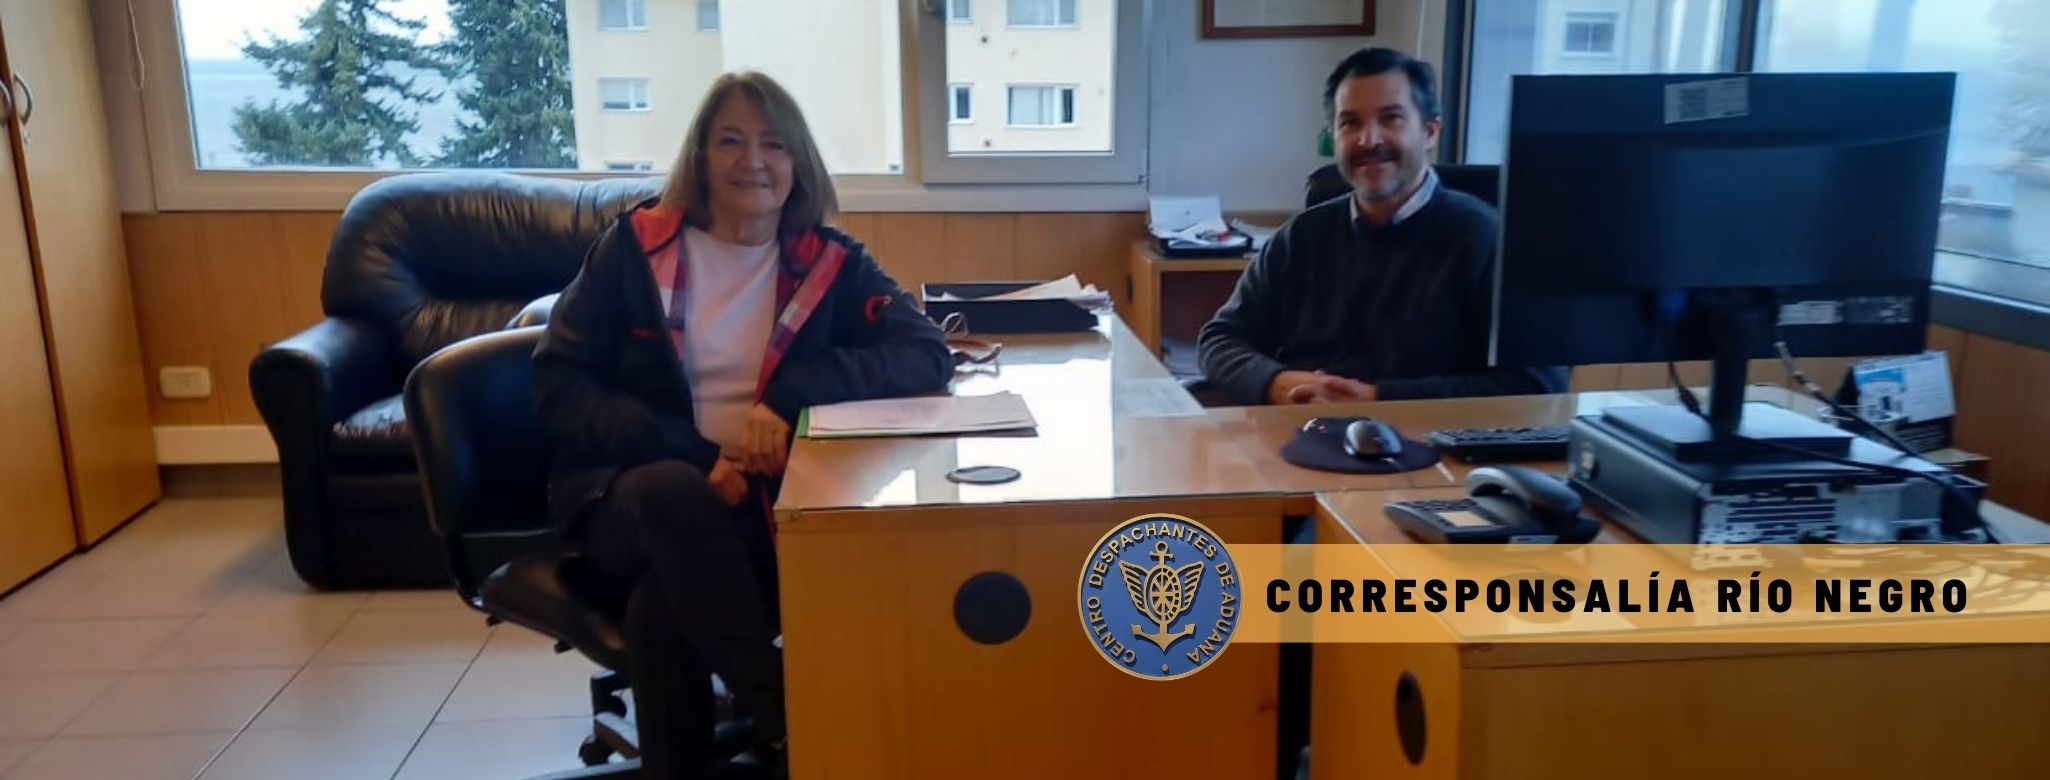 Corresponsalía Río Negro - Reunión con el Administrador de la Aduana de Bariloche